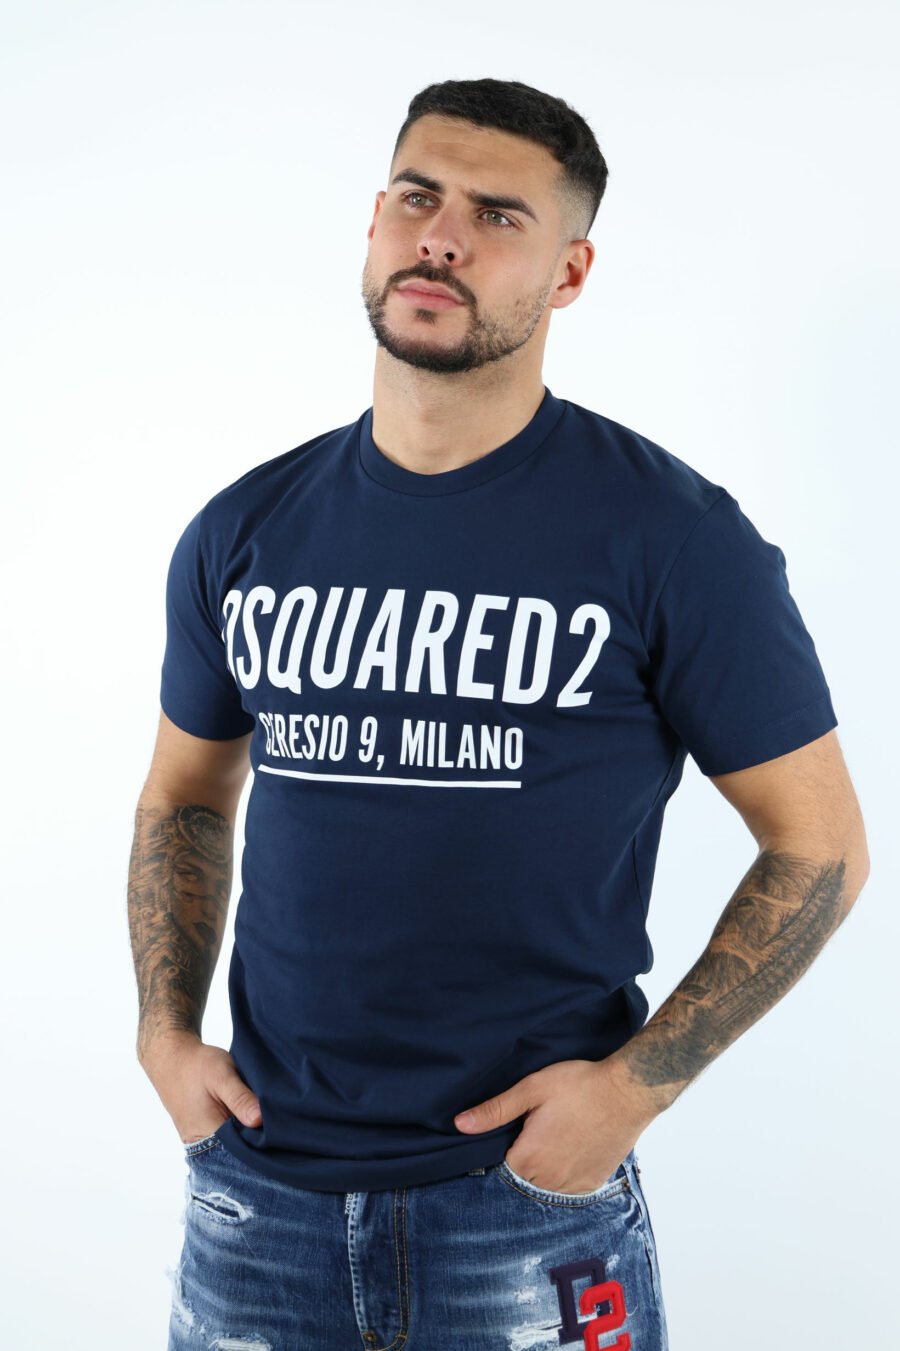 T-shirt azul escura com maxilogo "ceresio 9, milano" - 106847